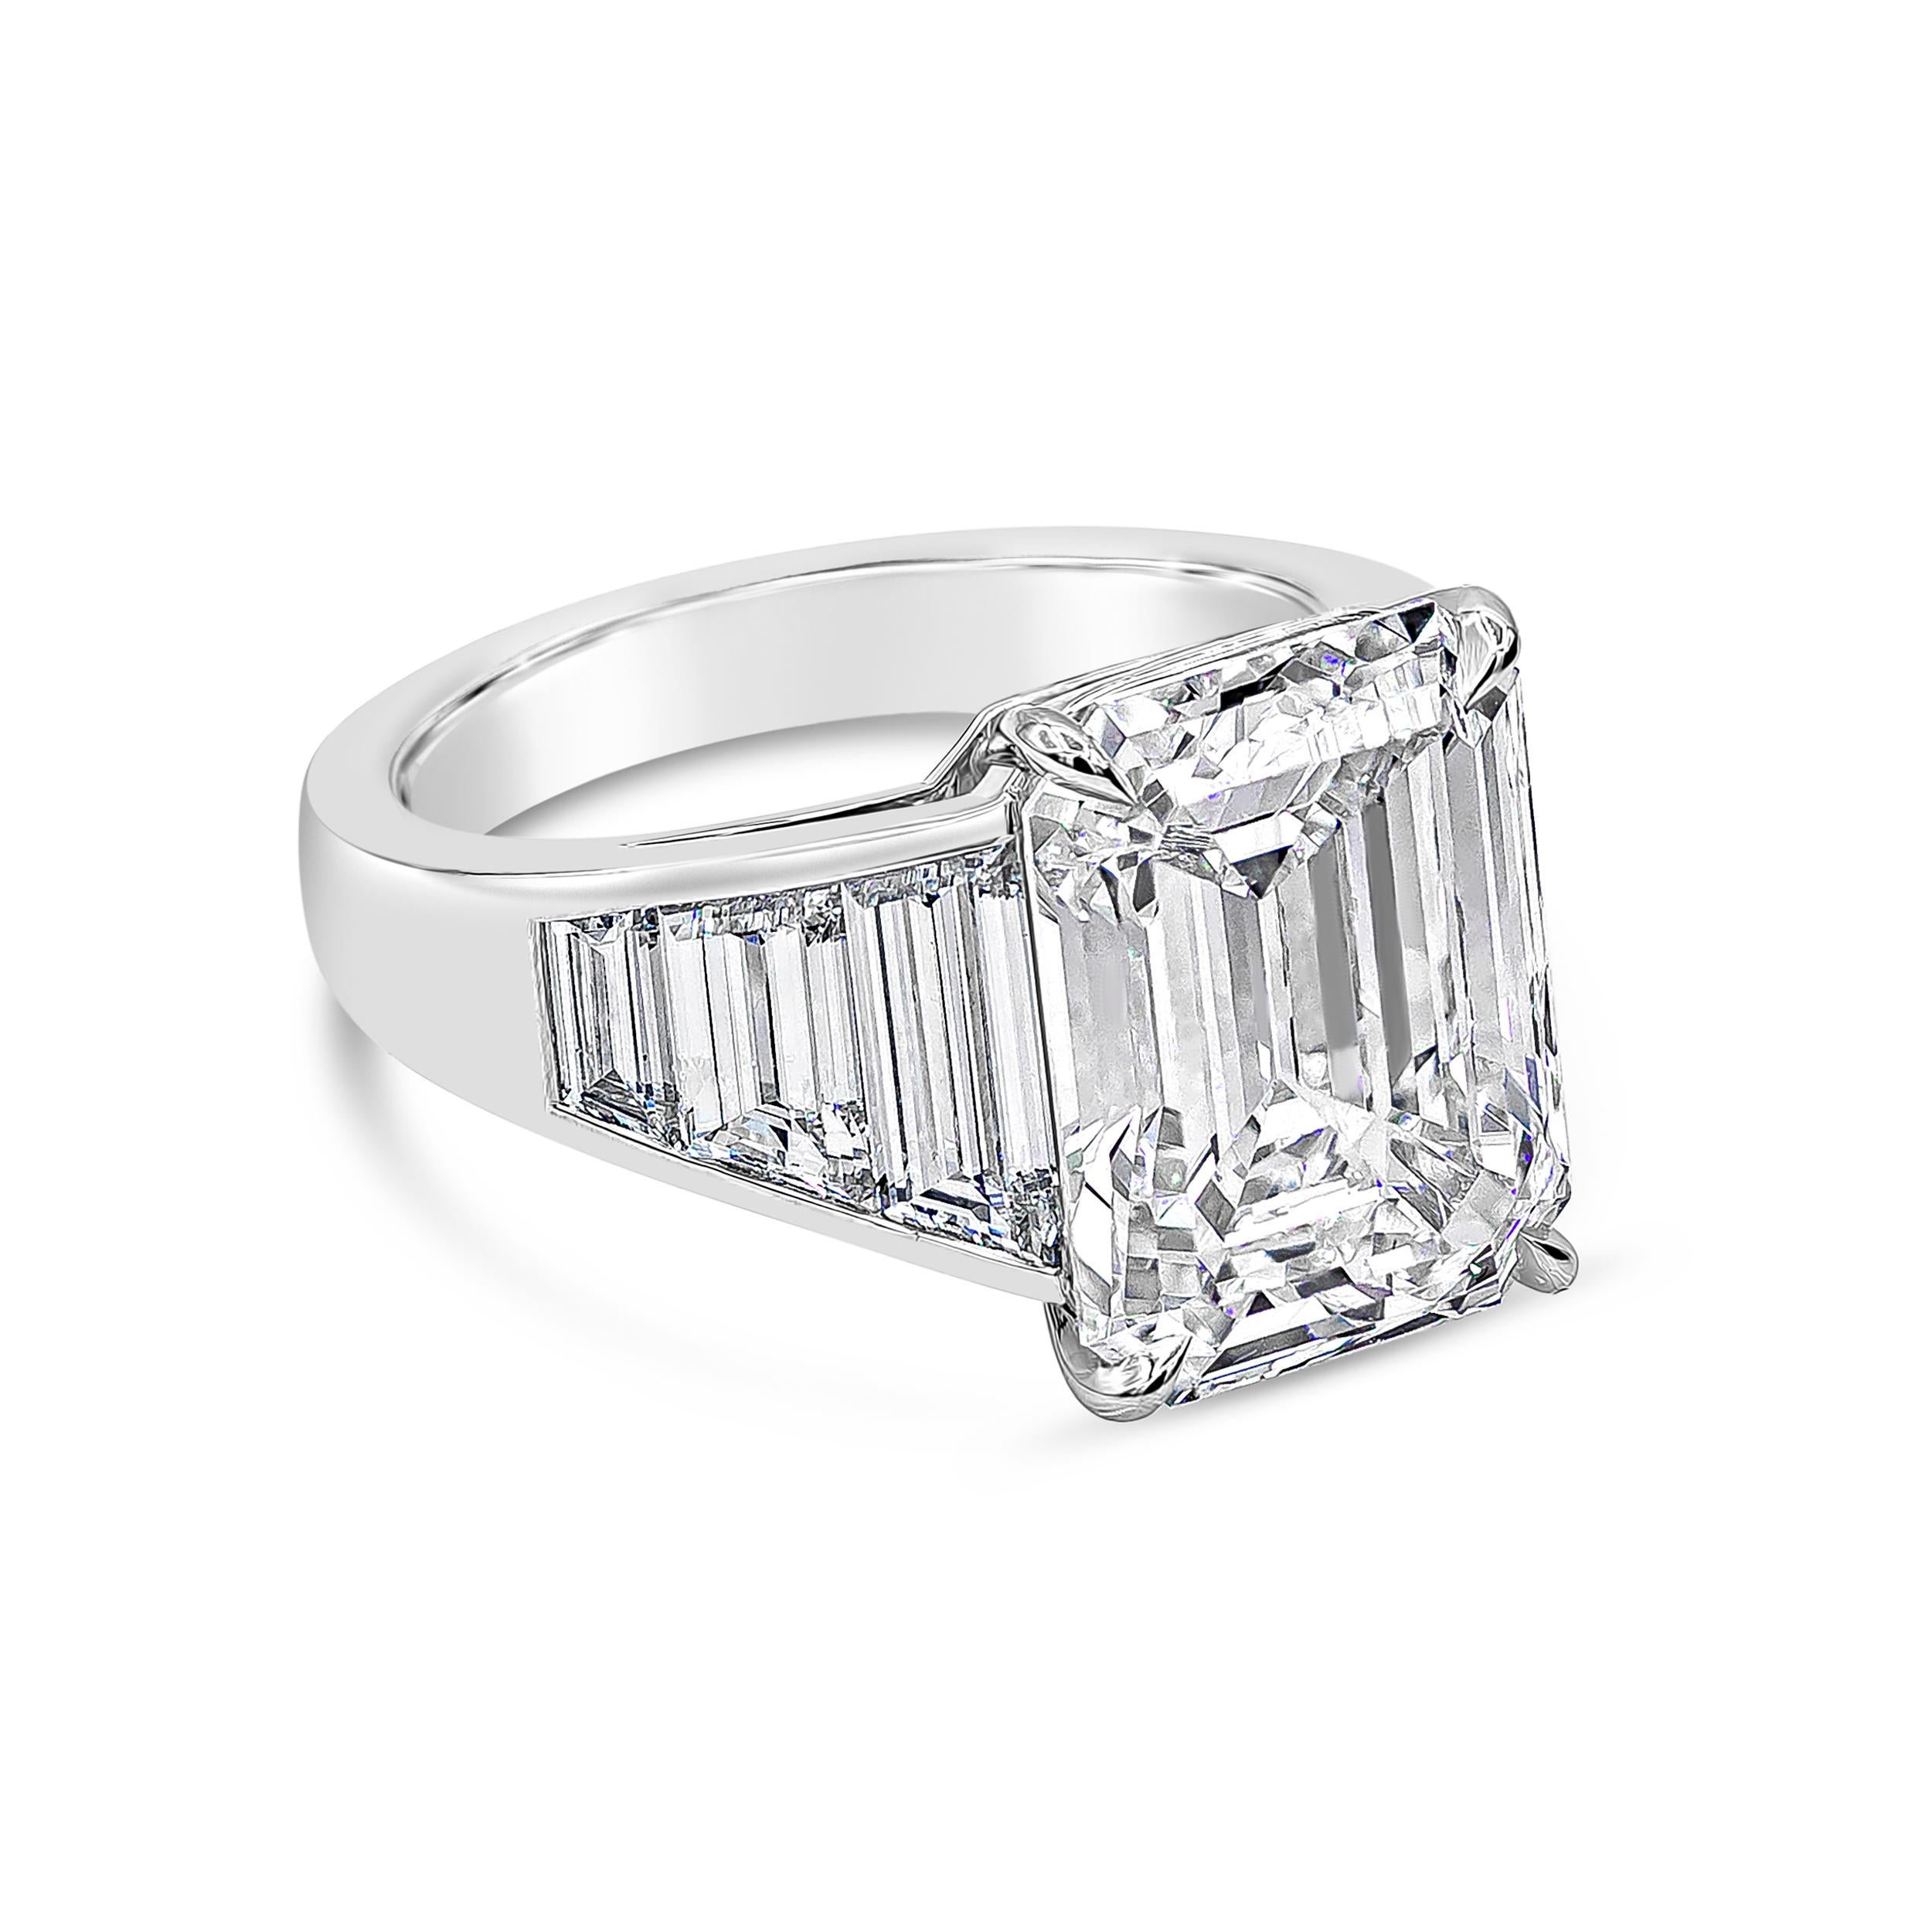 Ein atemberaubender, gut gearbeiteter Verlobungsring mit 8,35 Karat Diamant im Smaragdschliff, zertifiziert von GIA als H Farbe und VVS2 in Klarheit. Den zentralen Diamanten flankieren perfekt aufeinander abgestimmte, trapezförmige Diamanten mit